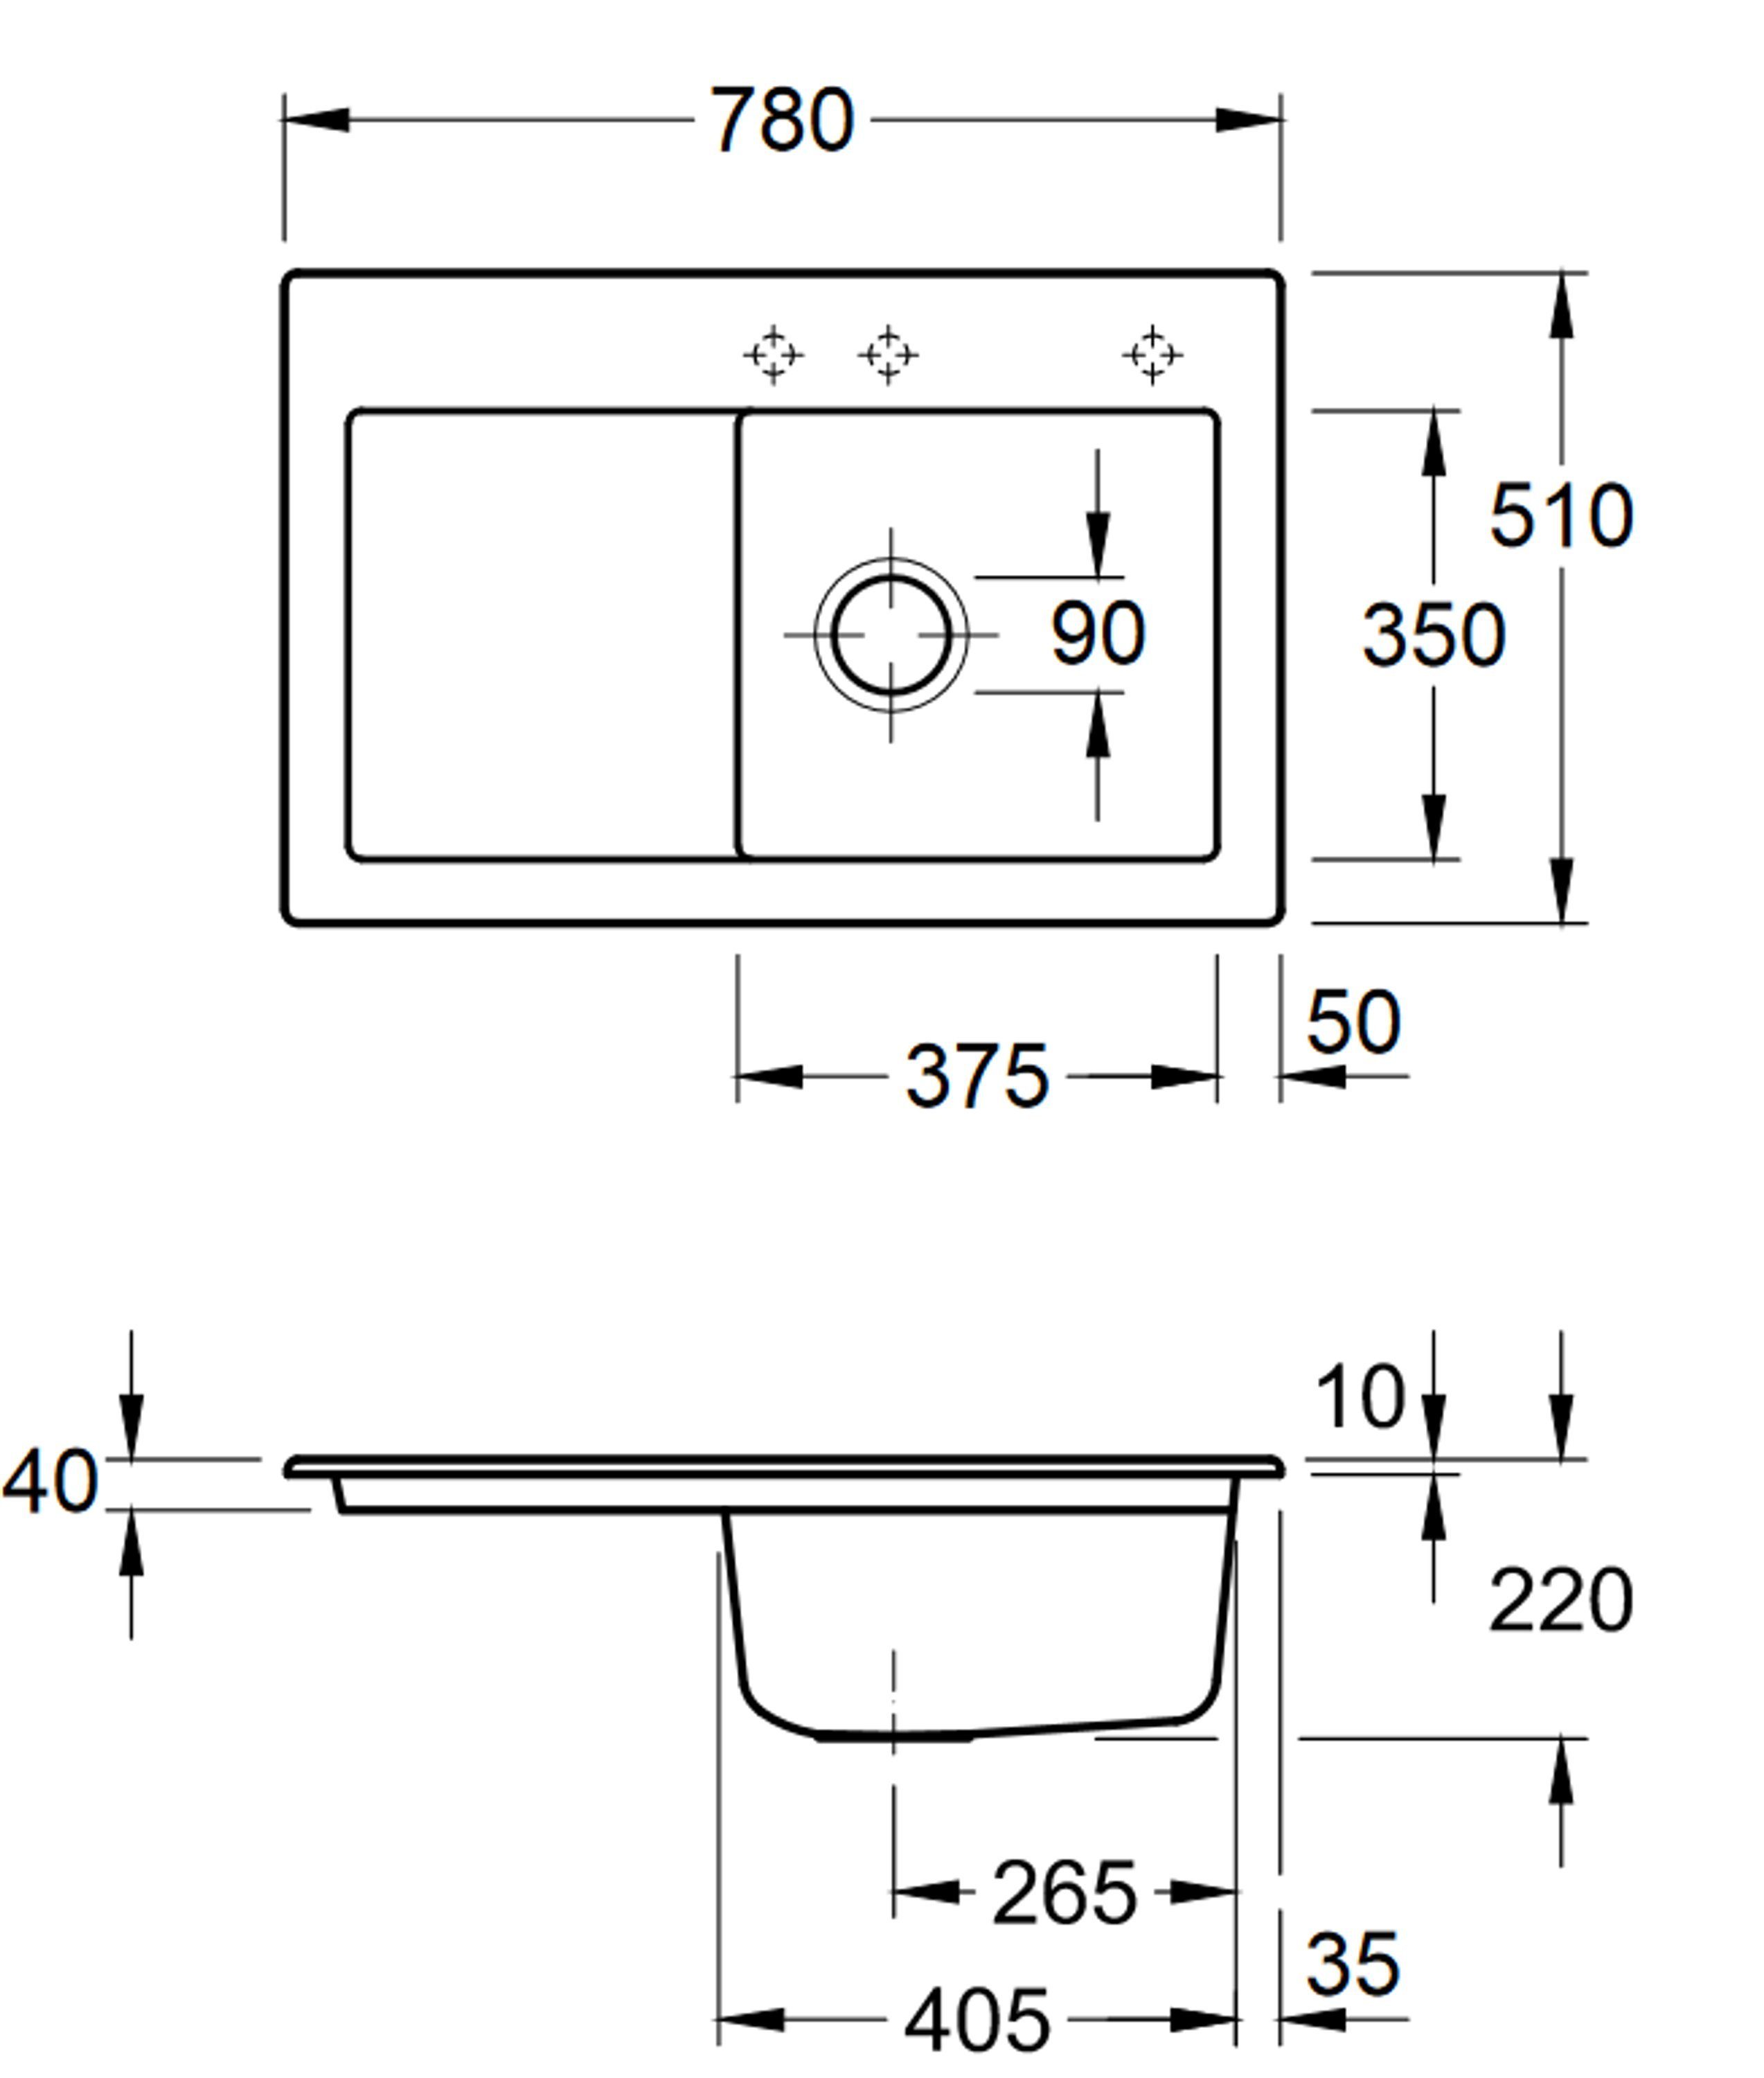 Villeroy & Boch Küchenspüle Rechteckig, möglich Subway 02 Serie, cm, rechts und 6714 78/22 SM, links Becken